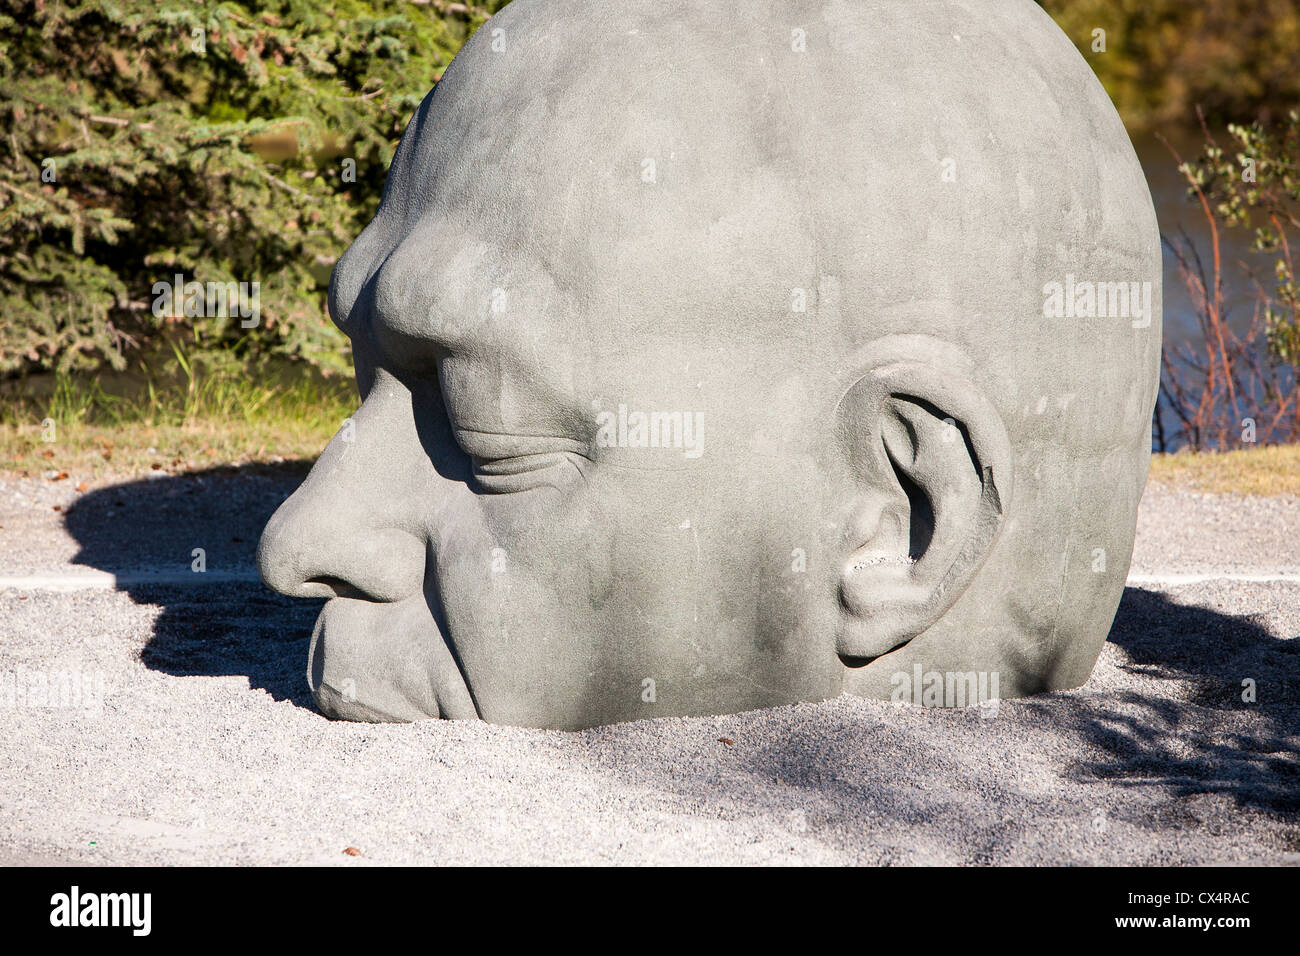 Una scultura denominata testa grande, una traduzione di Gaelico Ceann Mór, una variazione di Canmore il nome in Canmore, montagne rocciose, Foto Stock